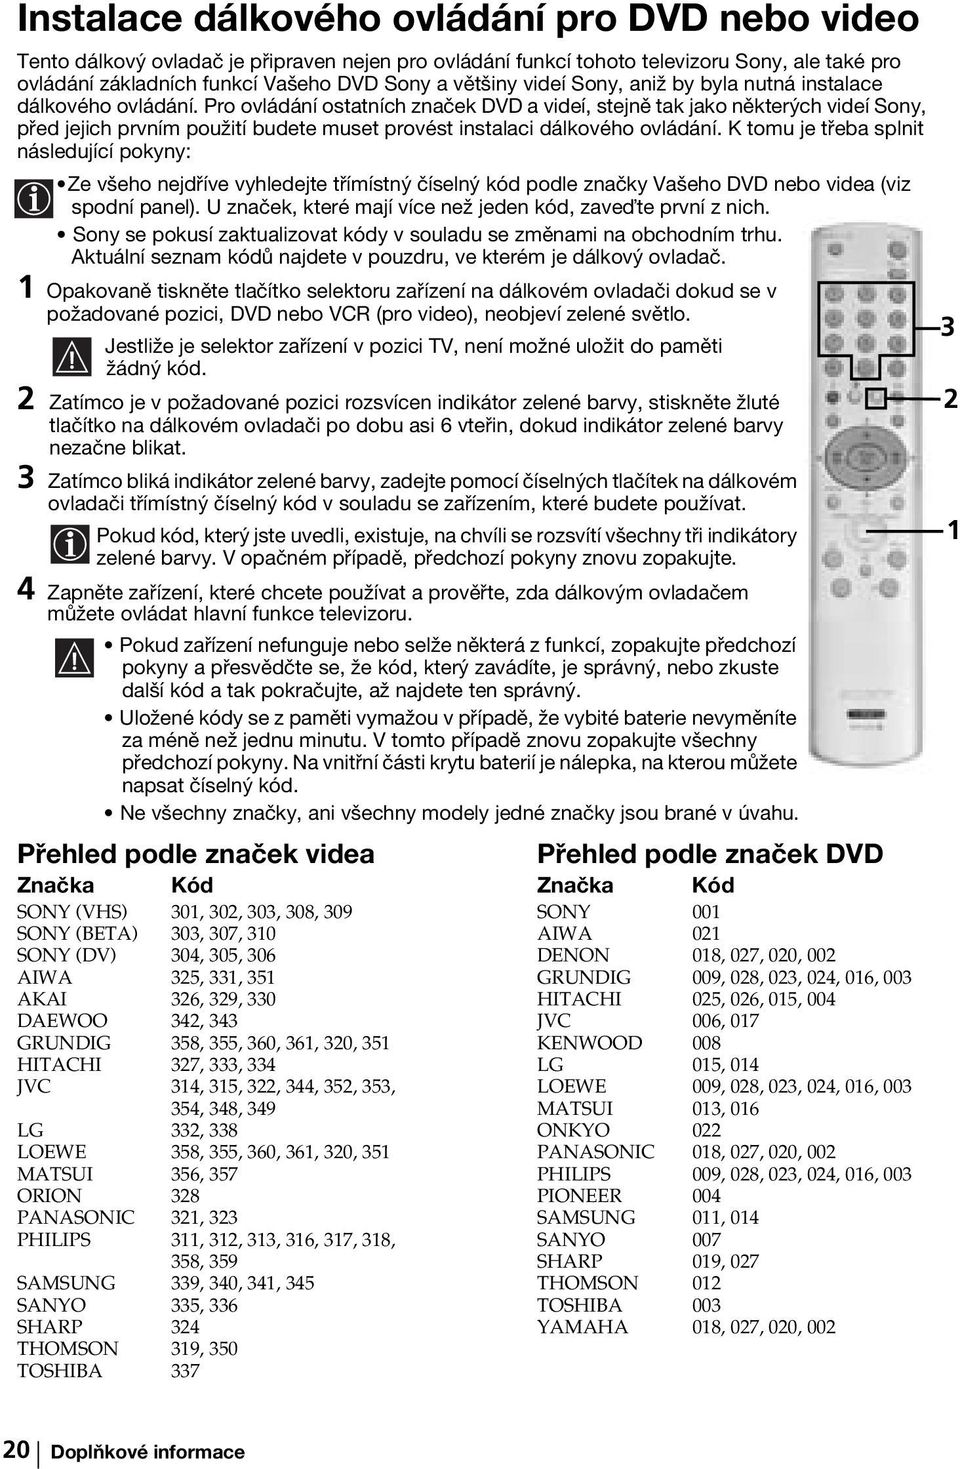 Pro ovládání ostatních značek DVD a videí, stejně tak jako některých videí Sony, před jejich prvním použití budete muset provést instalaci dálkového ovládání.